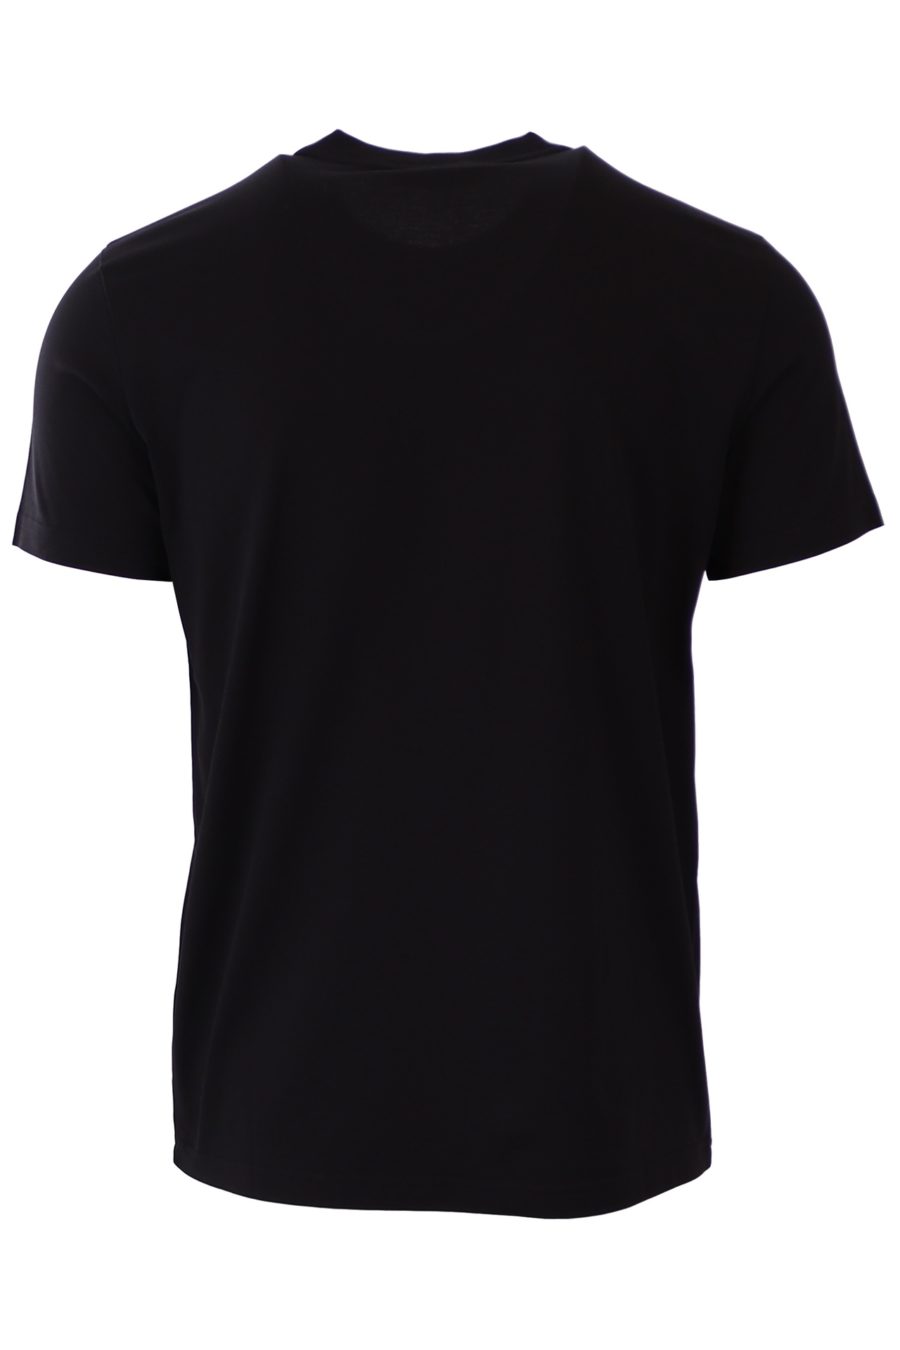 T-shirt preta de corte justo Givenchy Paris - fa204ec9d1ad0bce0d4ac7f5e43f7203532999a1